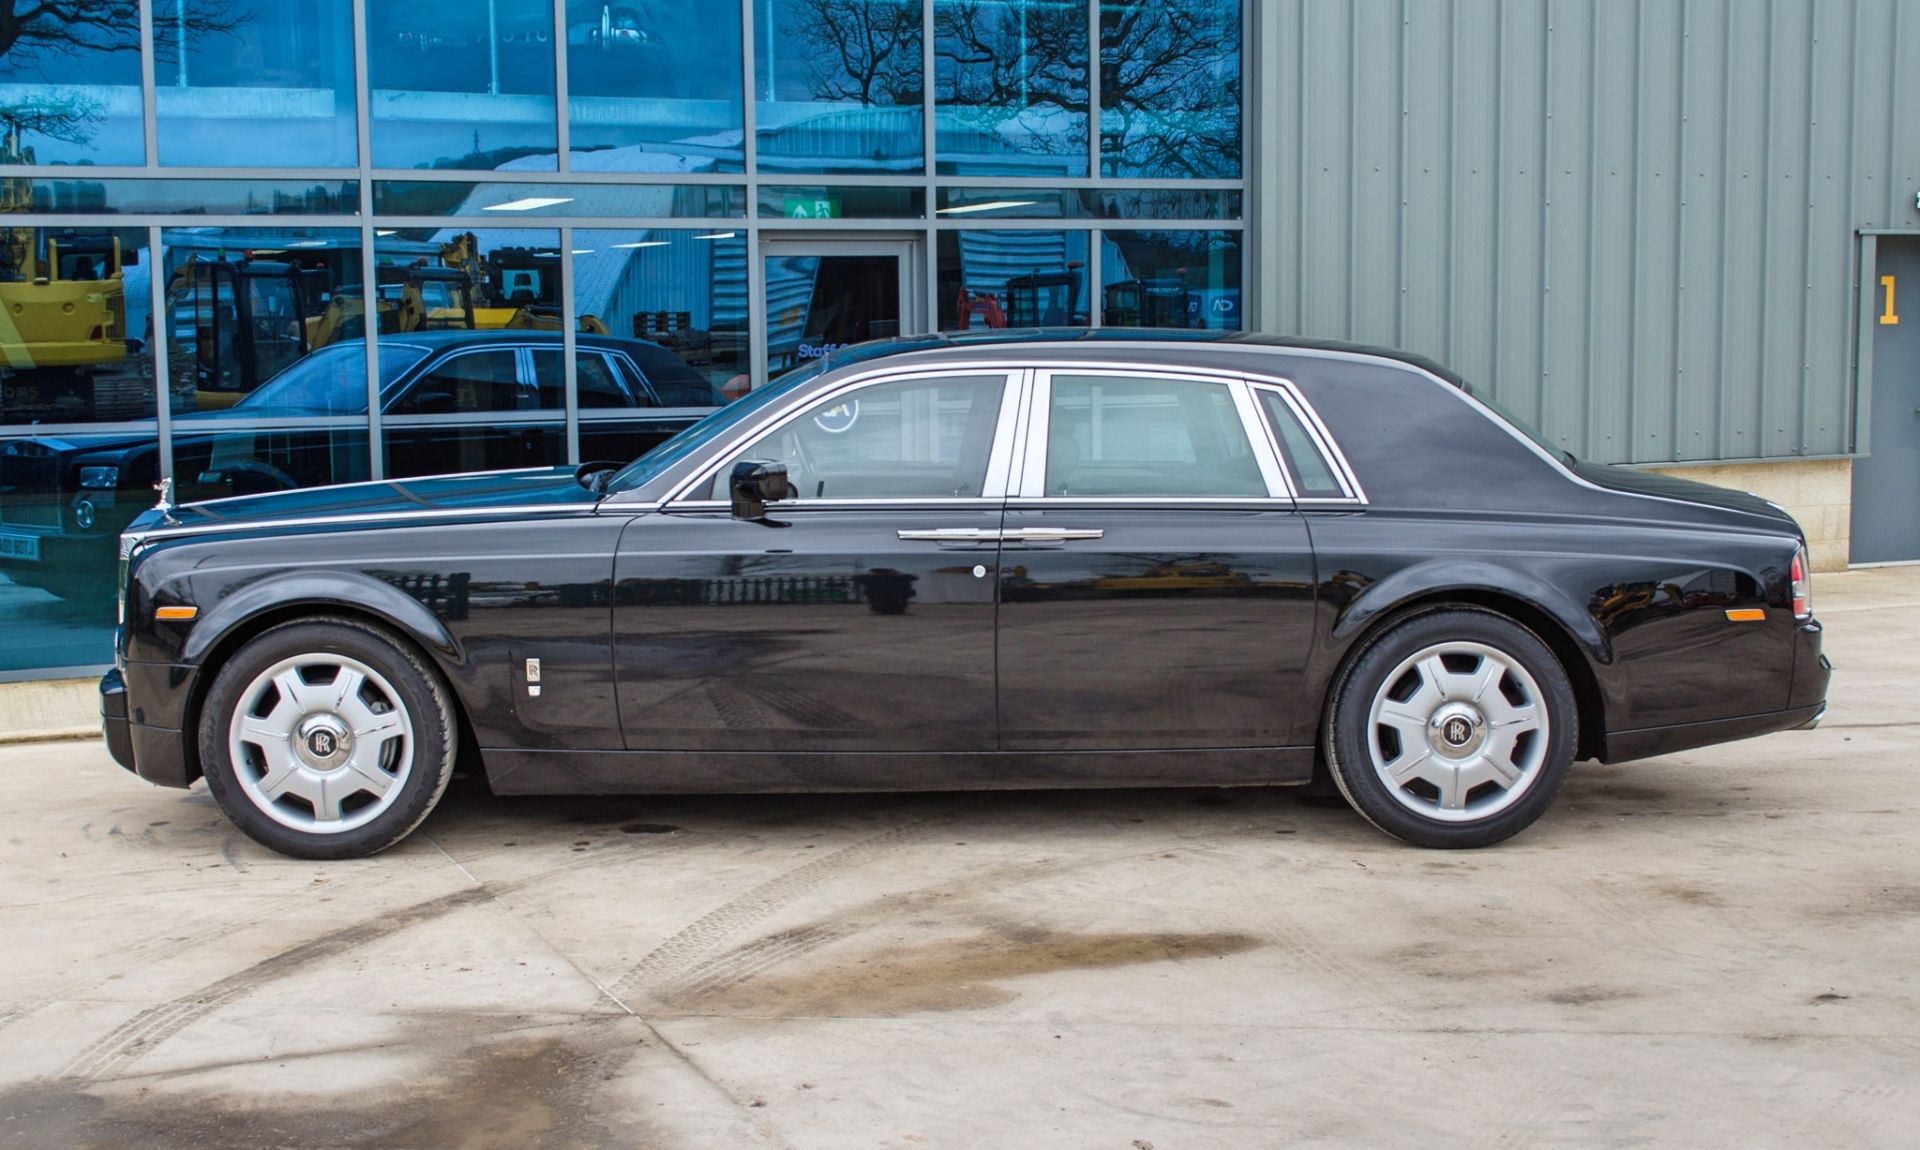 2008 Rolls Royce Phantom 6.75 litre V12 4 door saloon - Image 16 of 60